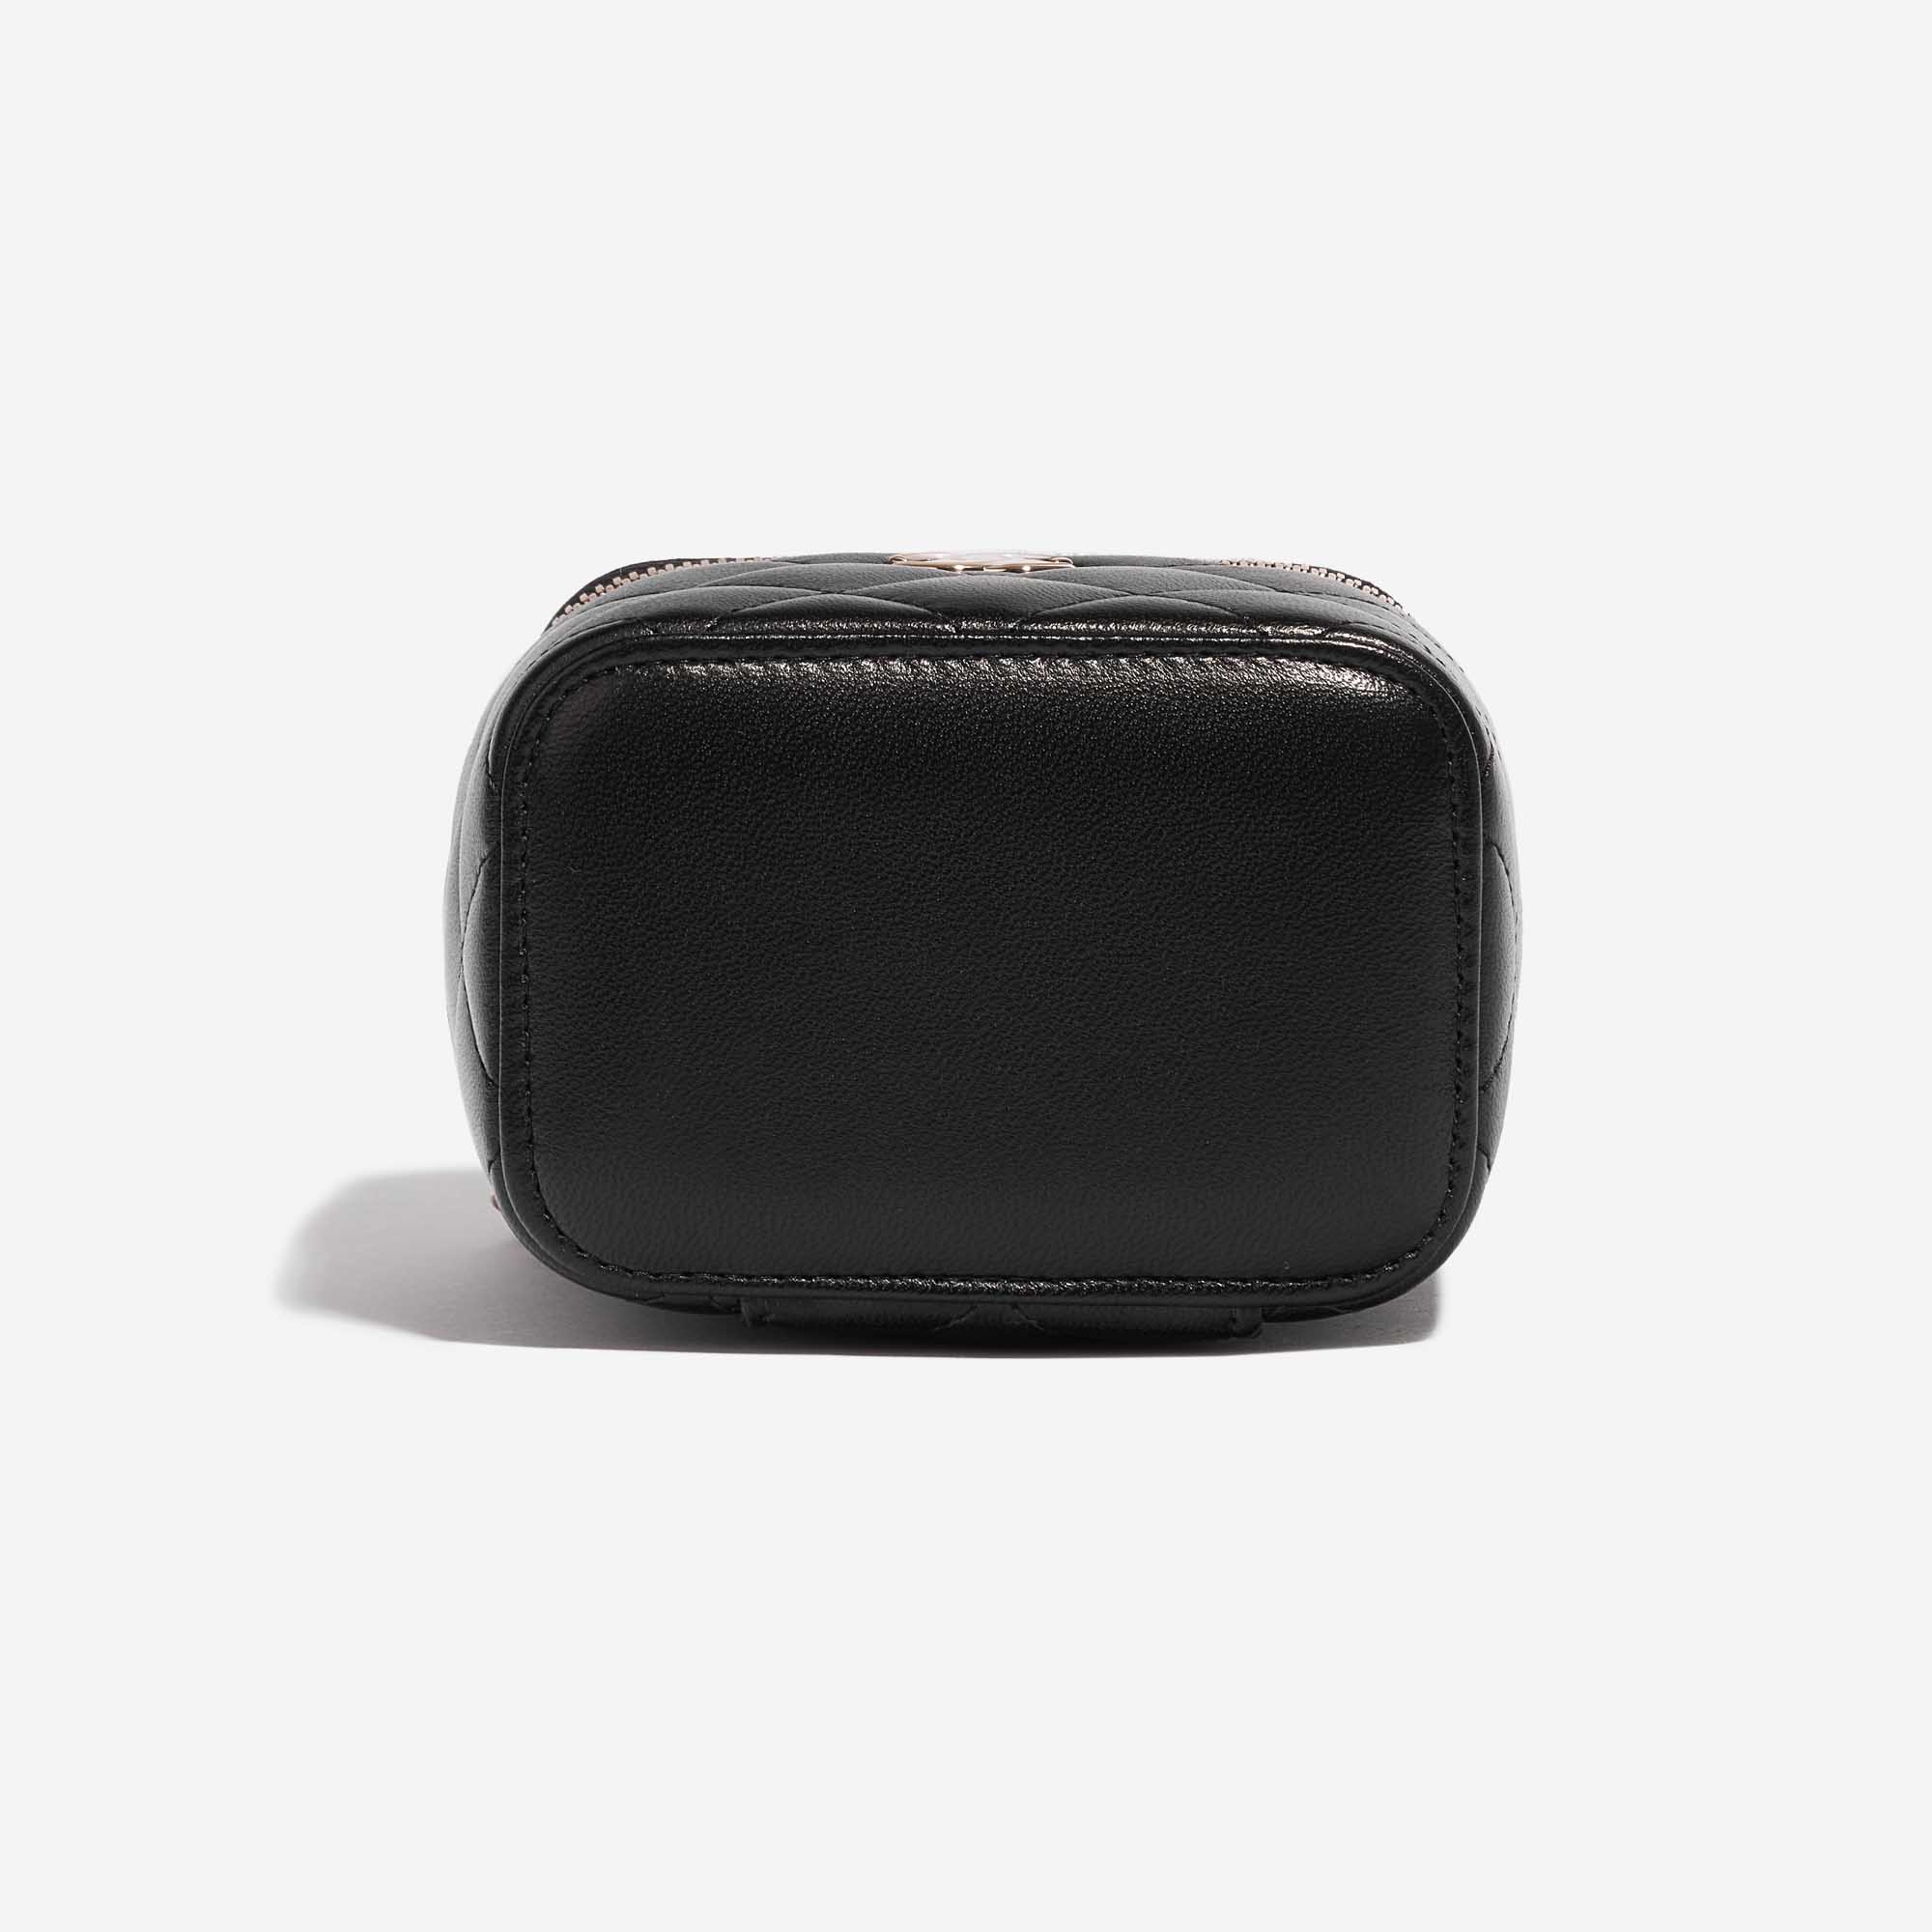 Pre-owned Chanel Tasche Vanity Case Small Lammleder Black Black Bottom | Verkaufen Sie Ihre Designer-Tasche auf Saclab.com